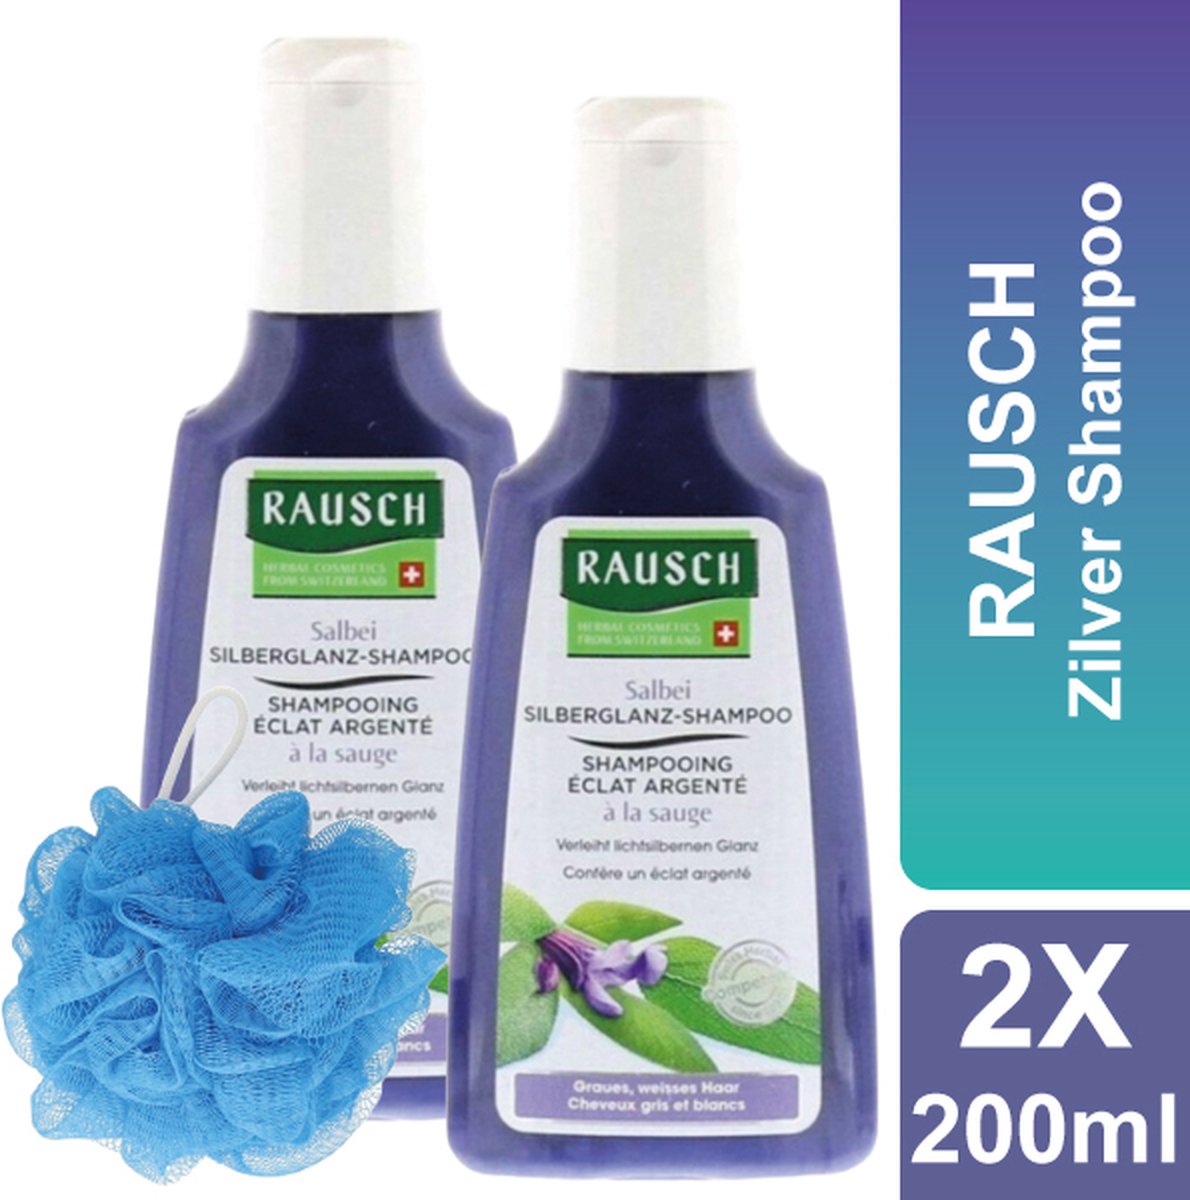 RAUSCH - Shampoo - Zilver Shampoo - Inclusief Douche Puff - 2 x 200 ml - voor Blond en Grijs Haar - Zilver Glans Shampoo - met Salie - Voordeelverpakking